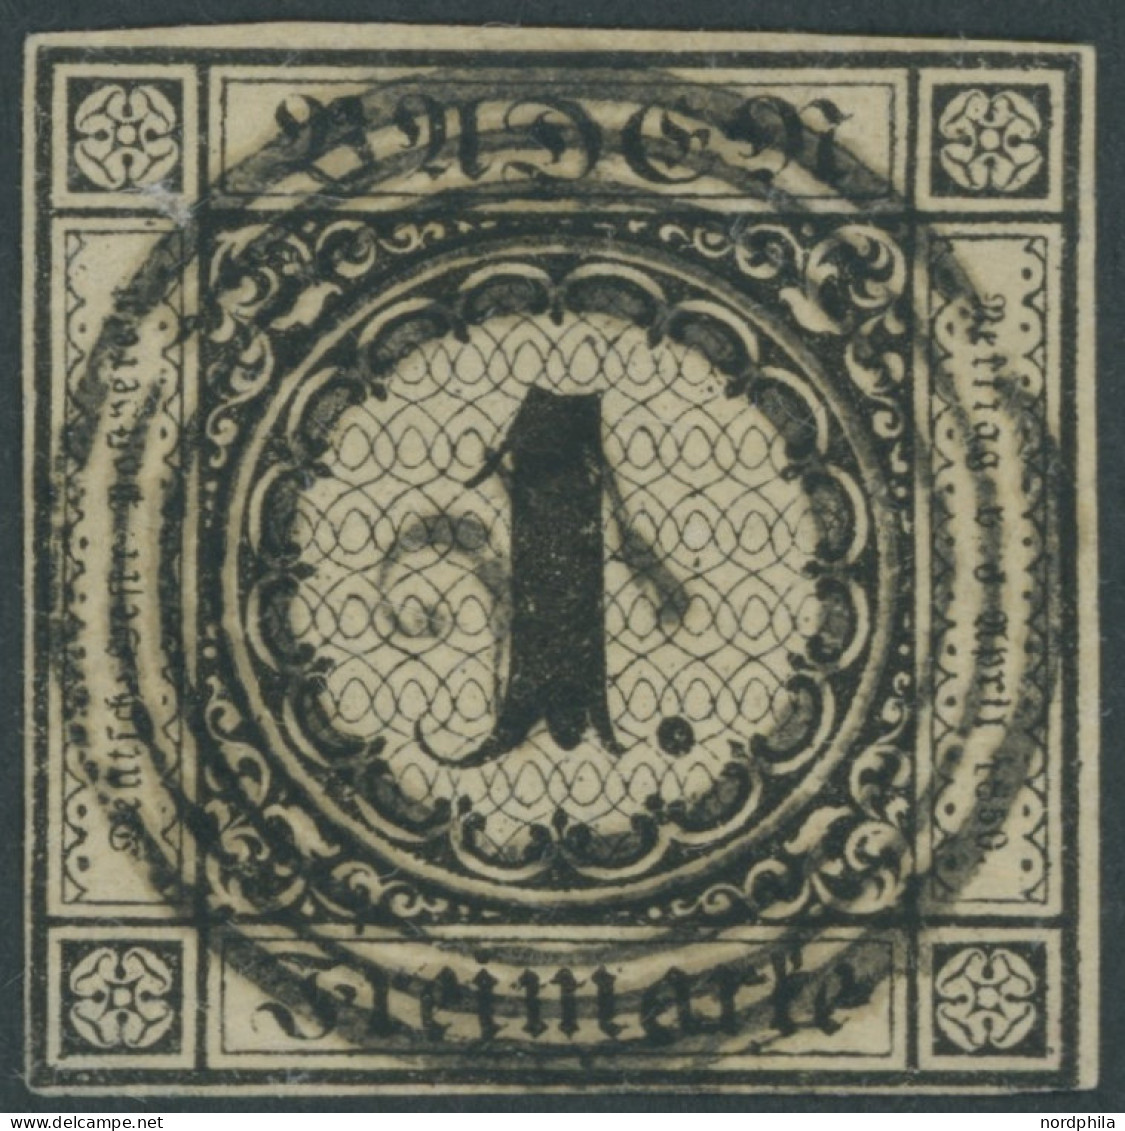 BADEN 1a O, 1851, 1 Kr. Schwarz Auf Sämisch, Zentrischer Nummernstempel 27, Untere Linke Ecke Etwas Hell Sonst Vollrandi - Usados